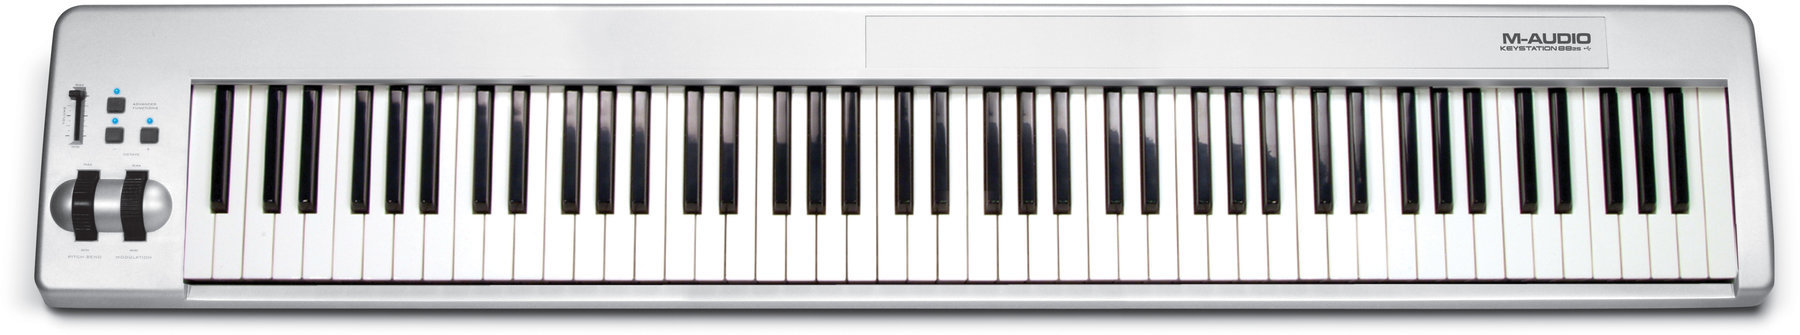 Tastiera MIDI M-Audio Keystation 88 es